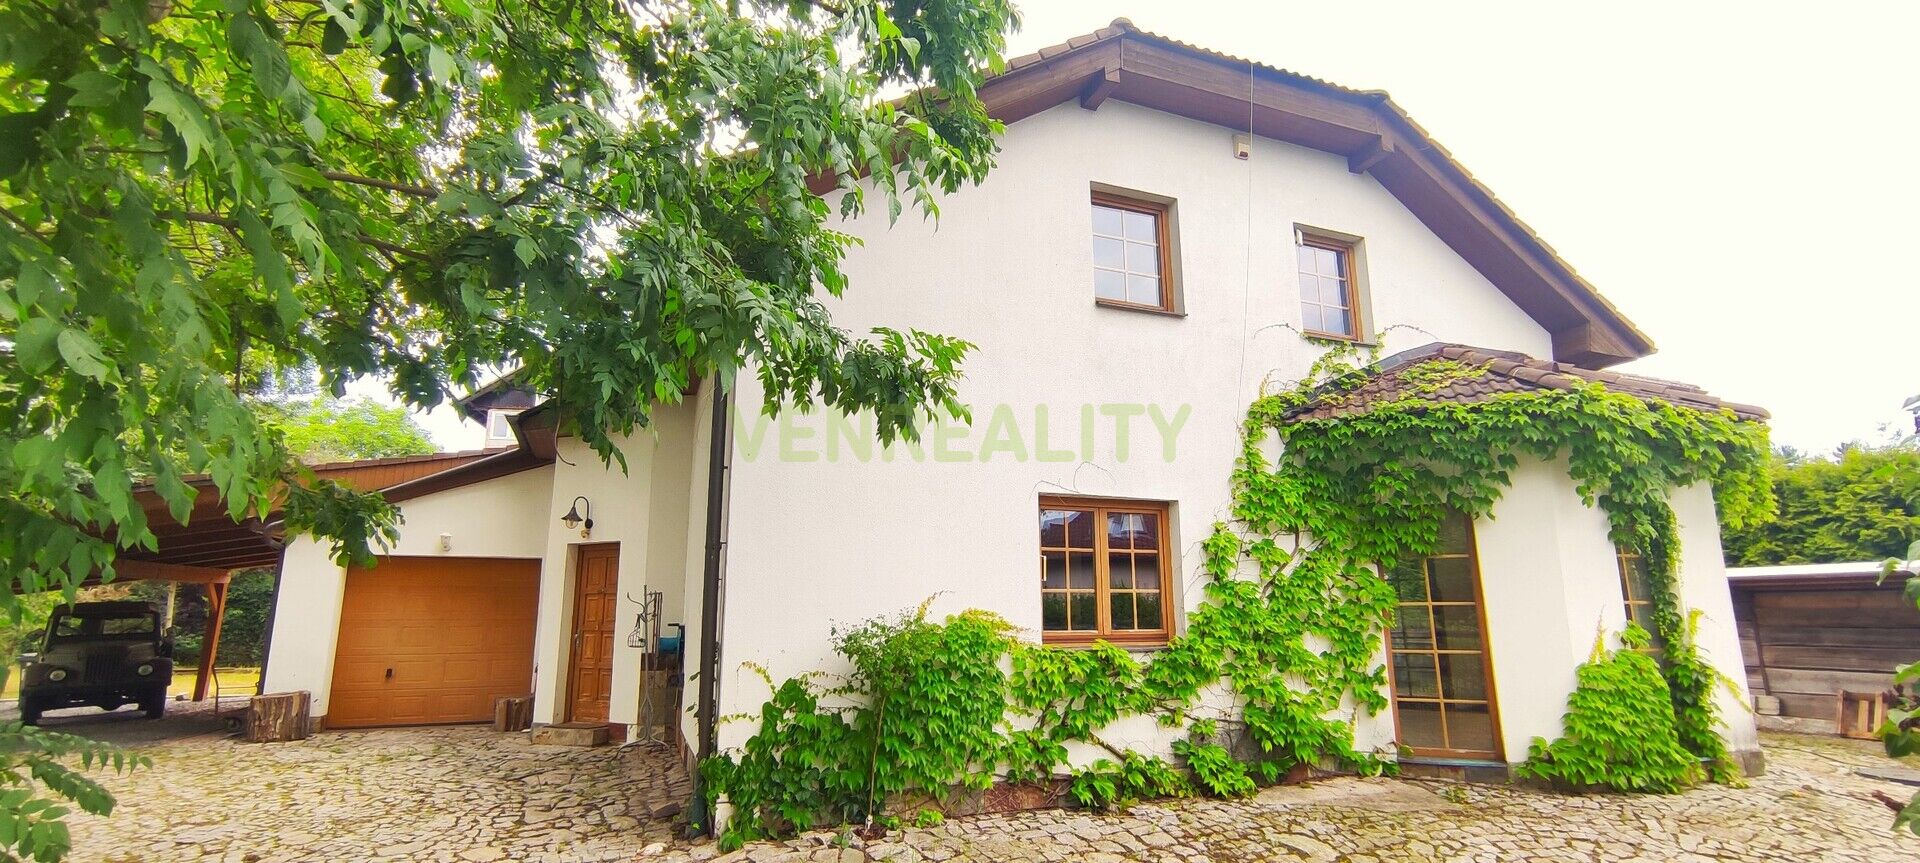 Prodej rodinného domu o dispozici 6+1/T a garáží, plocha 250 m2, pozemek 842 m2, Praha 10, Dubeč